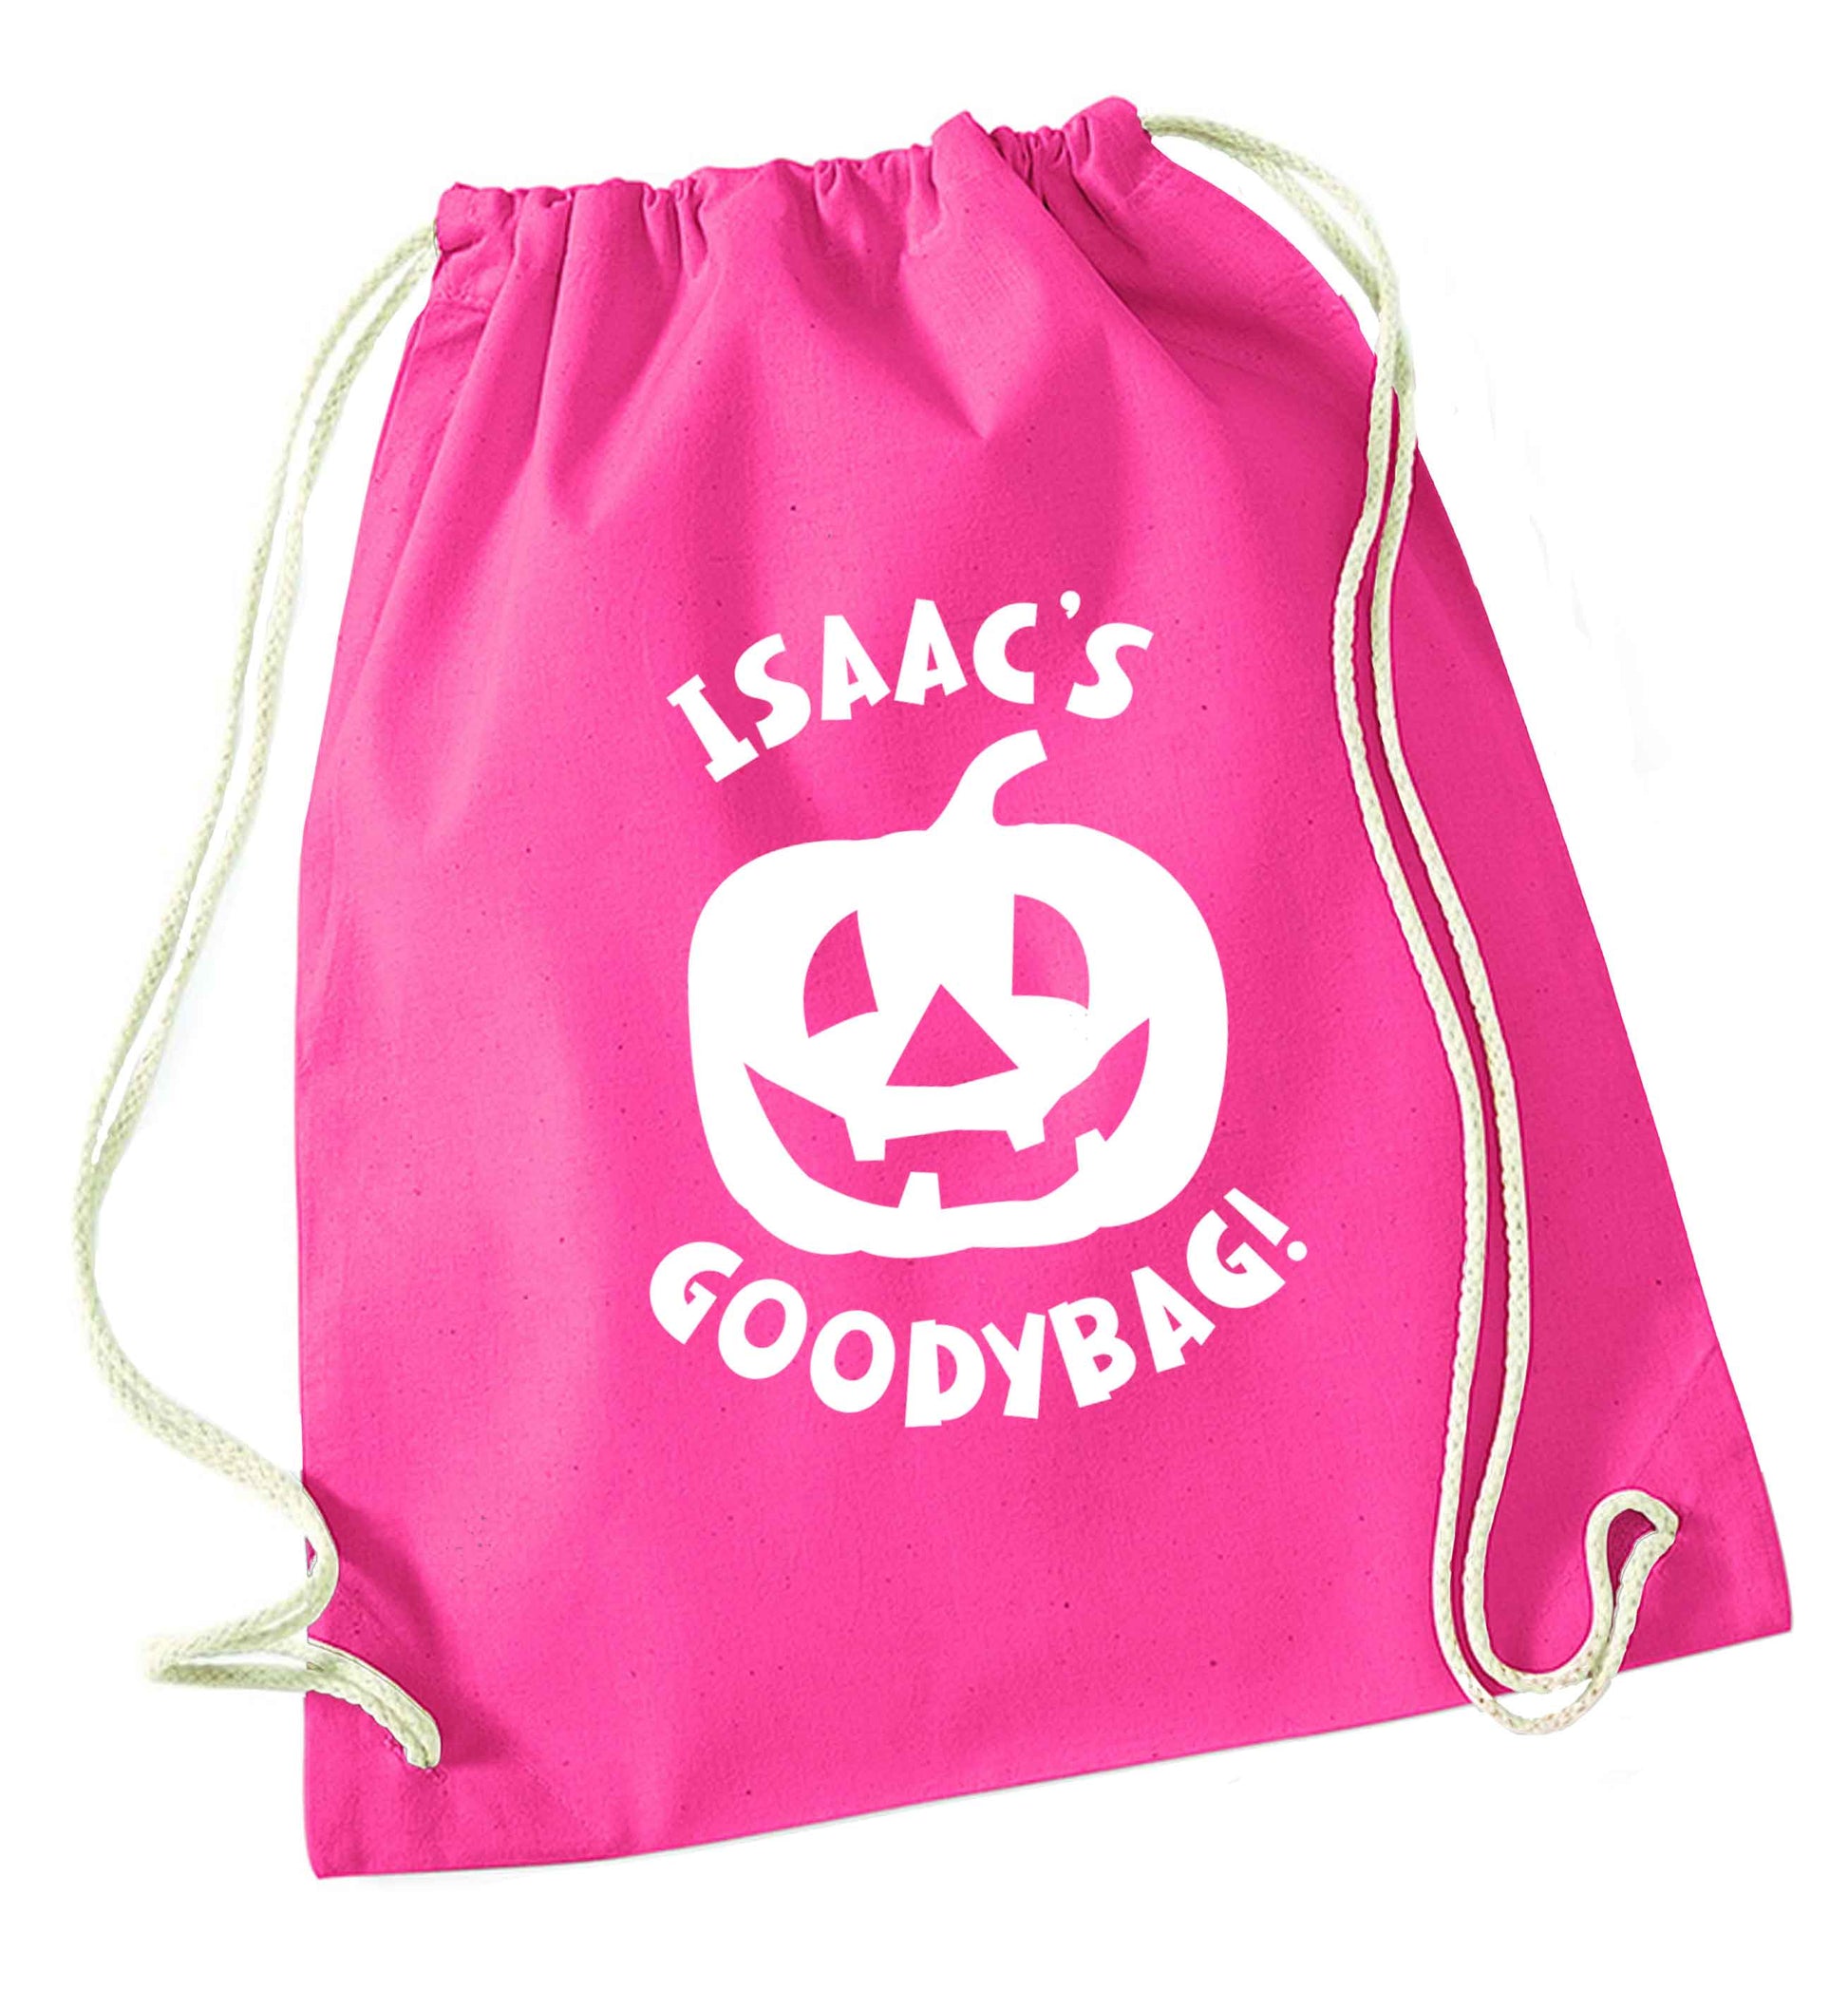 Pumpkin on Way pink drawstring bag